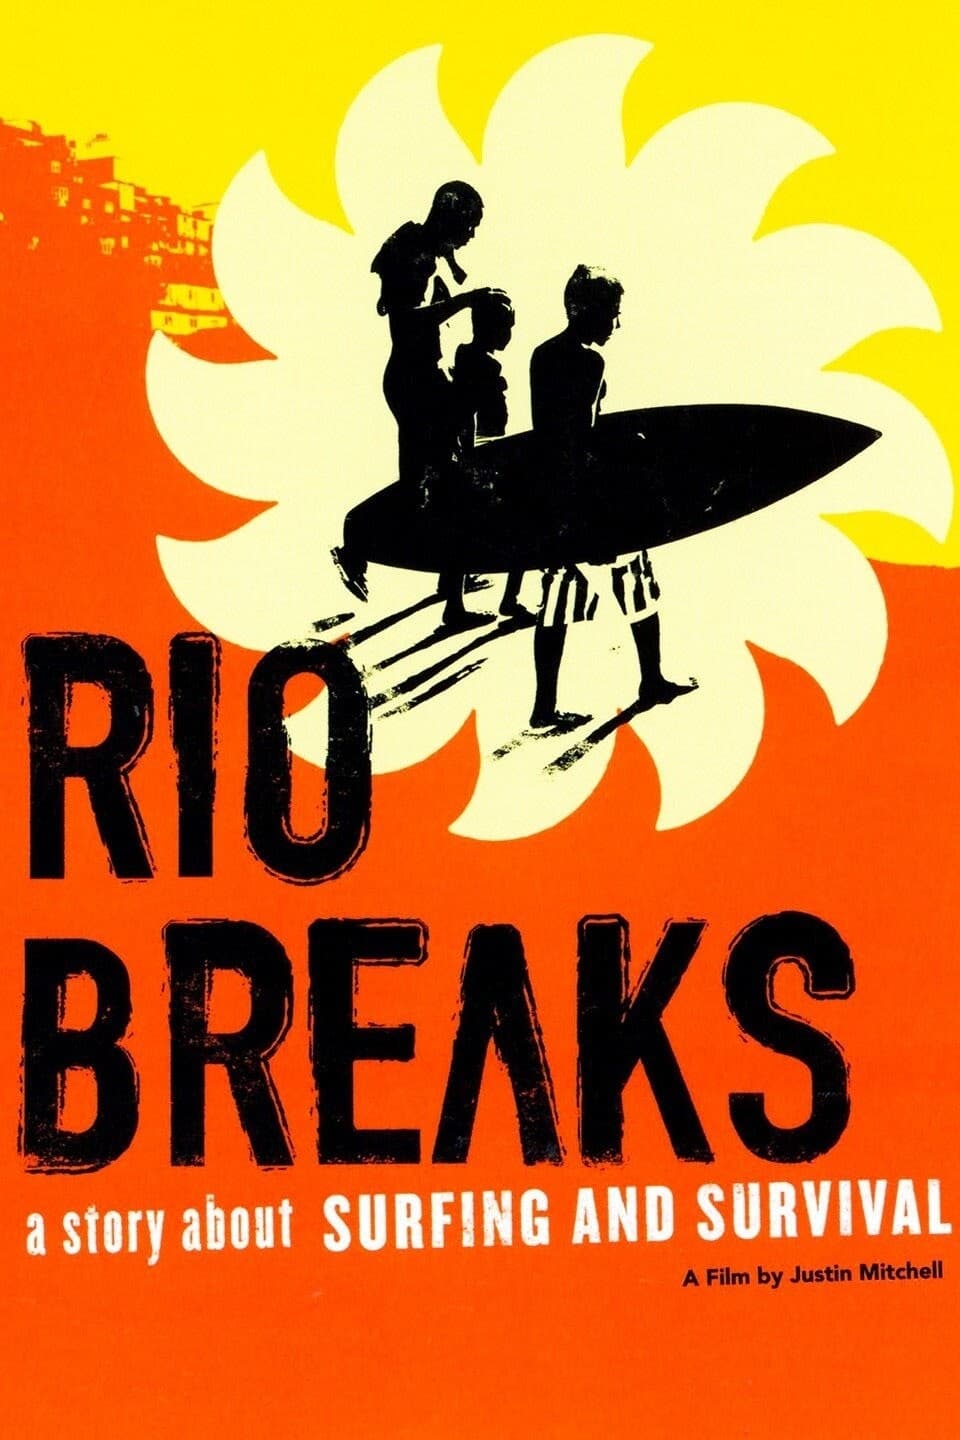 Rio Breaks